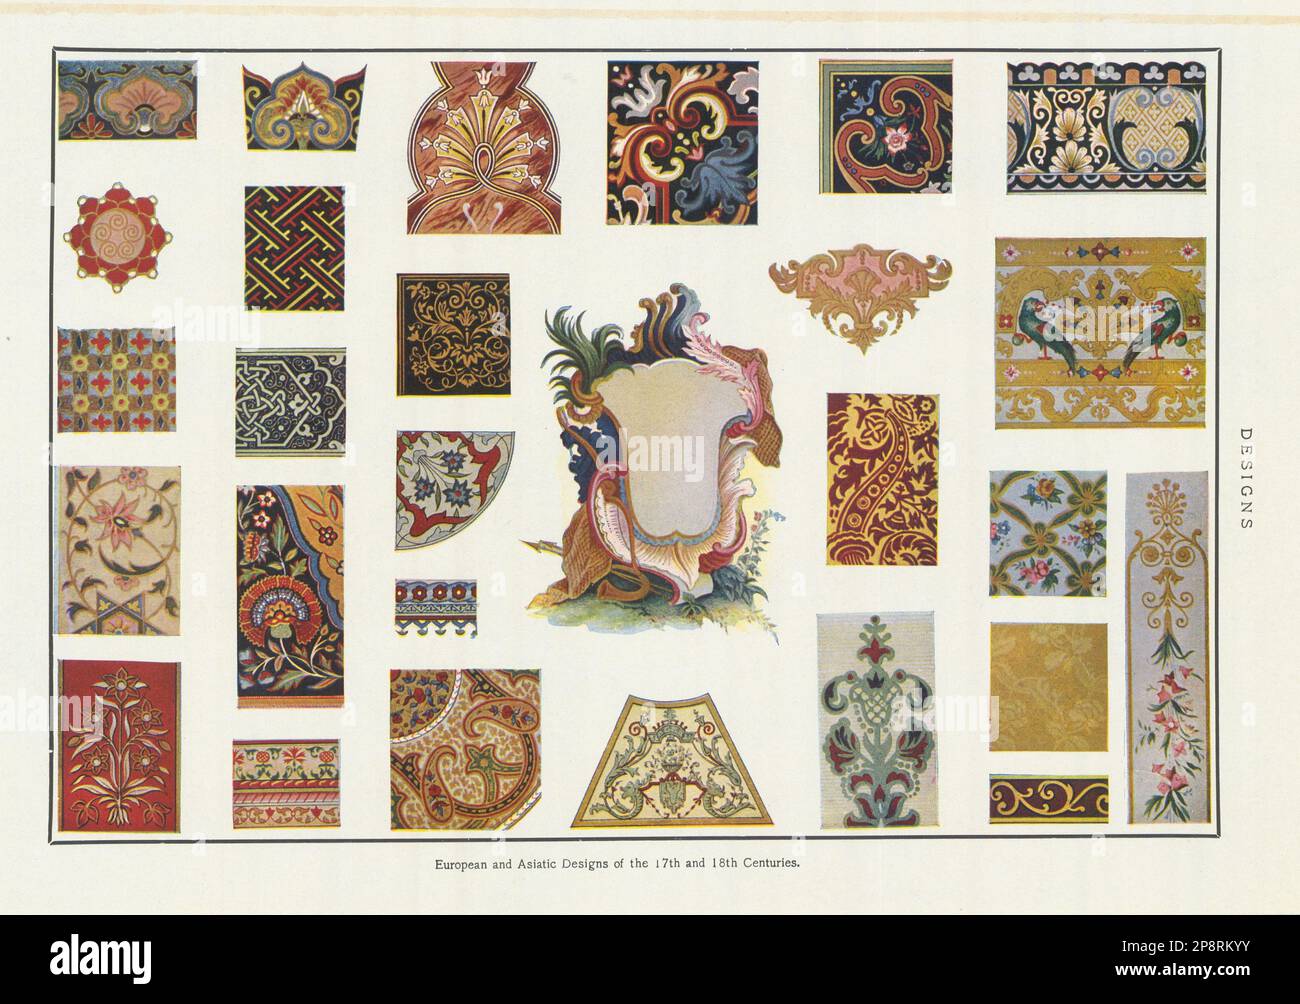 Diseños europeos y asiáticos de los siglos 17th y 18th, 1907 antigua impresión Foto de stock